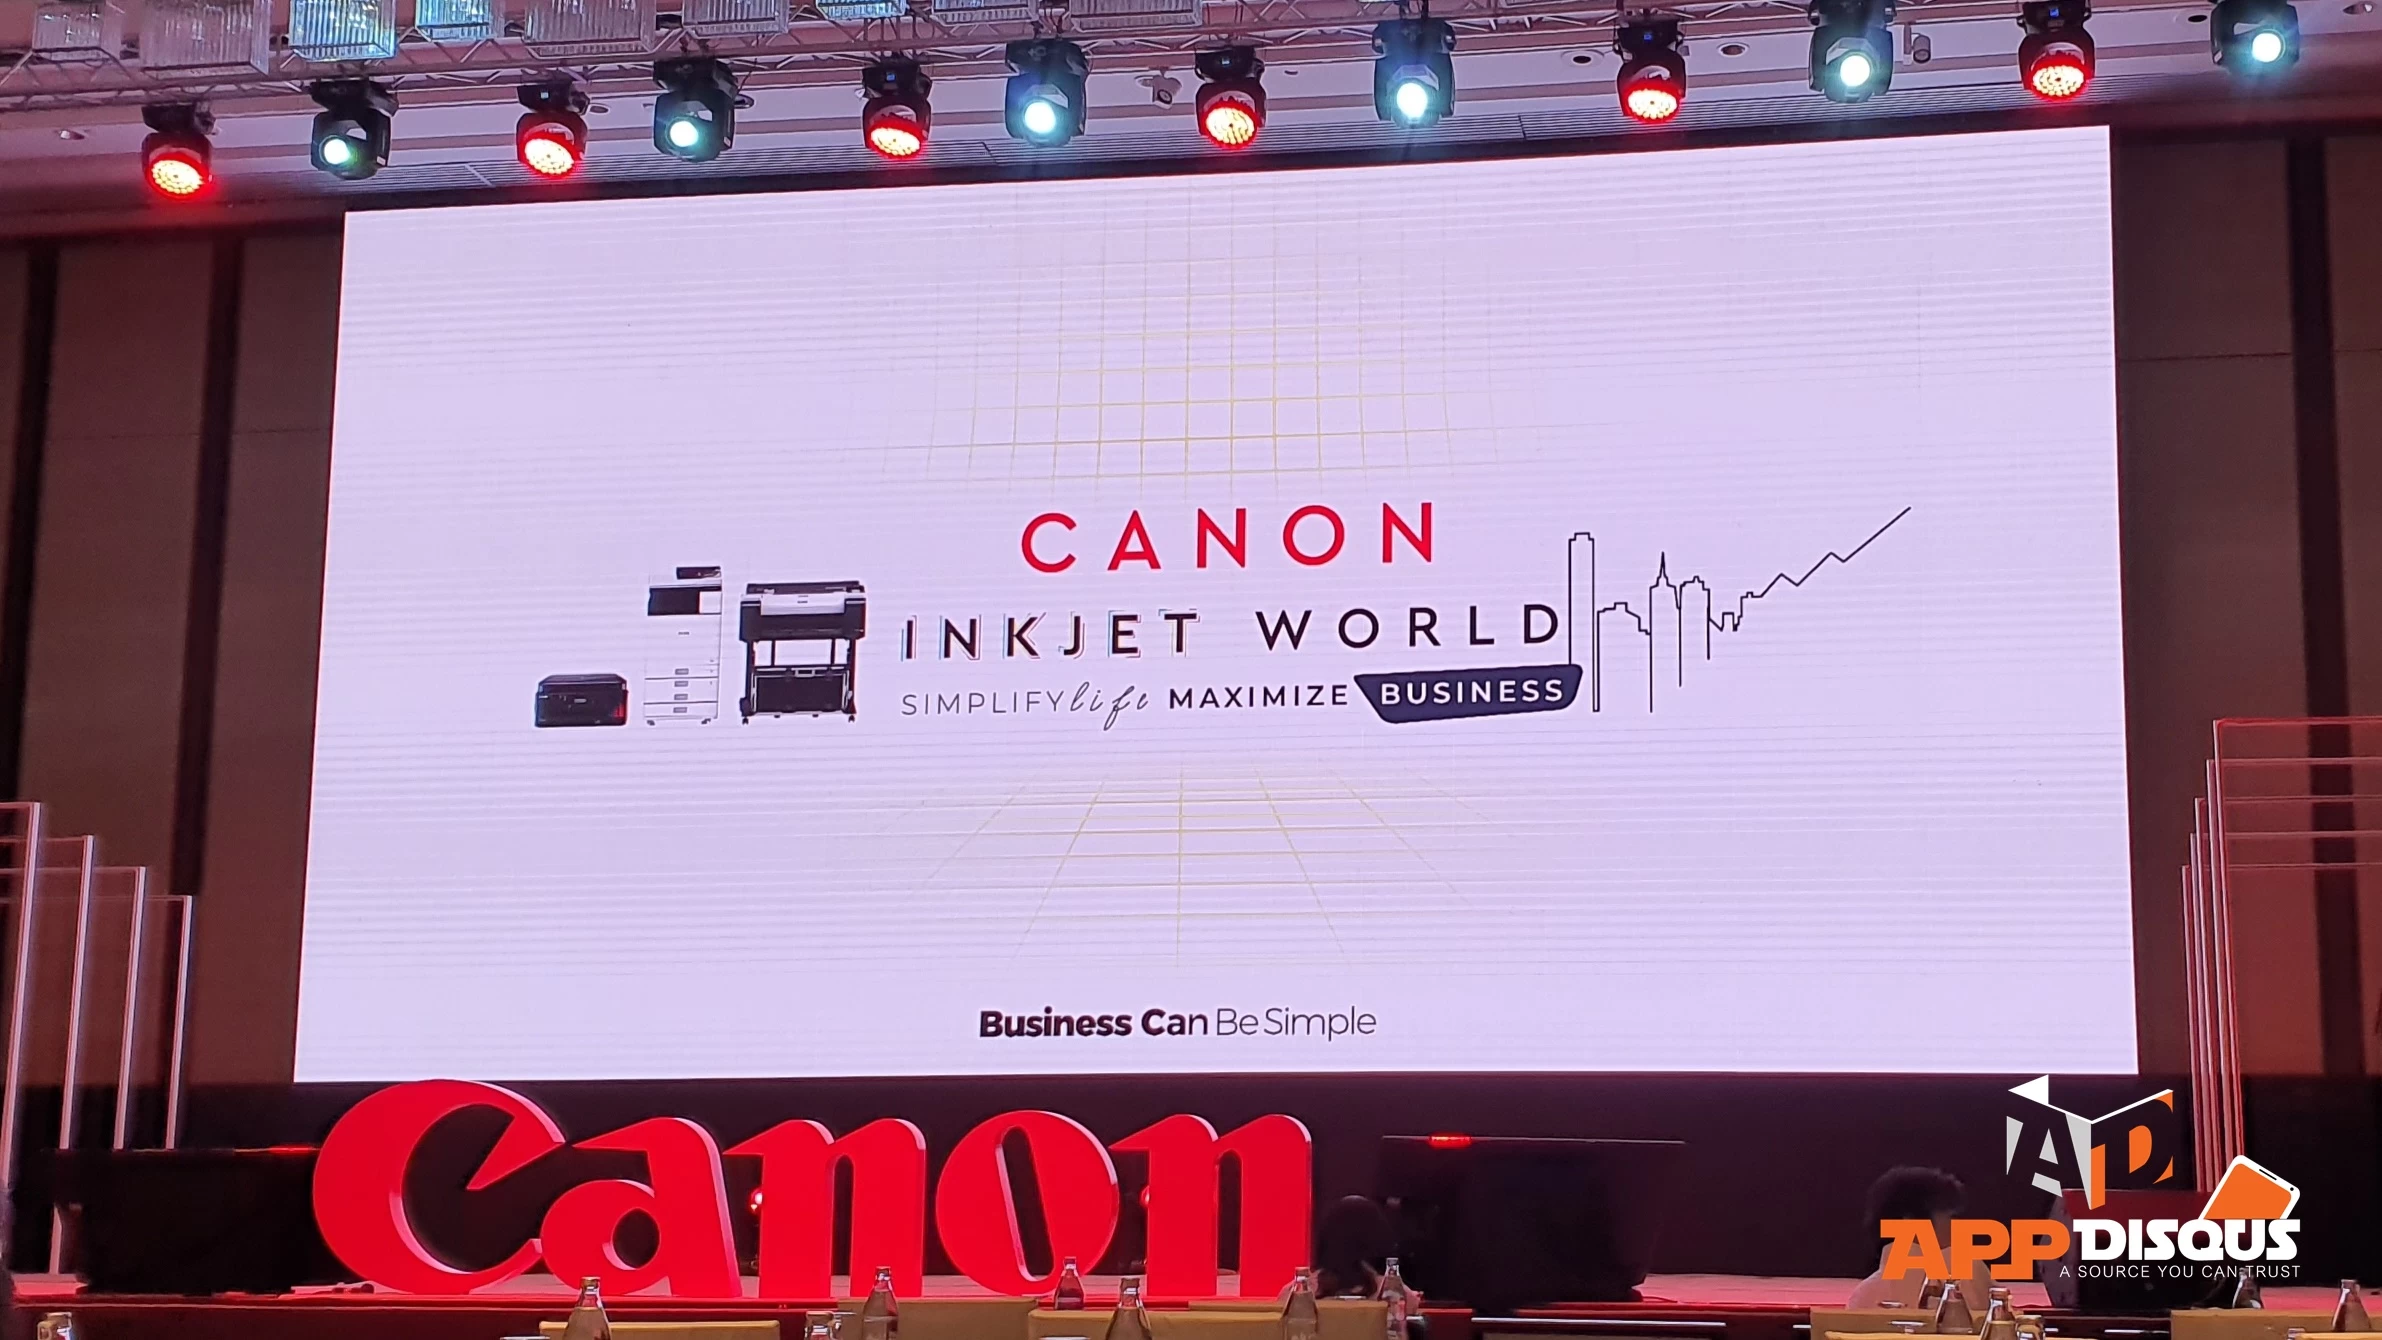 20190919 112934 | Canon | แคนนอนเนรมิตรงาน “แคนนอน อิงค์เจ็ท เวิลด์” เปิดตัวอิงค์เจ็ท G ซีรีส์และ WG ซีรีส์ 5 รุ่นใหม่ล่าสุด